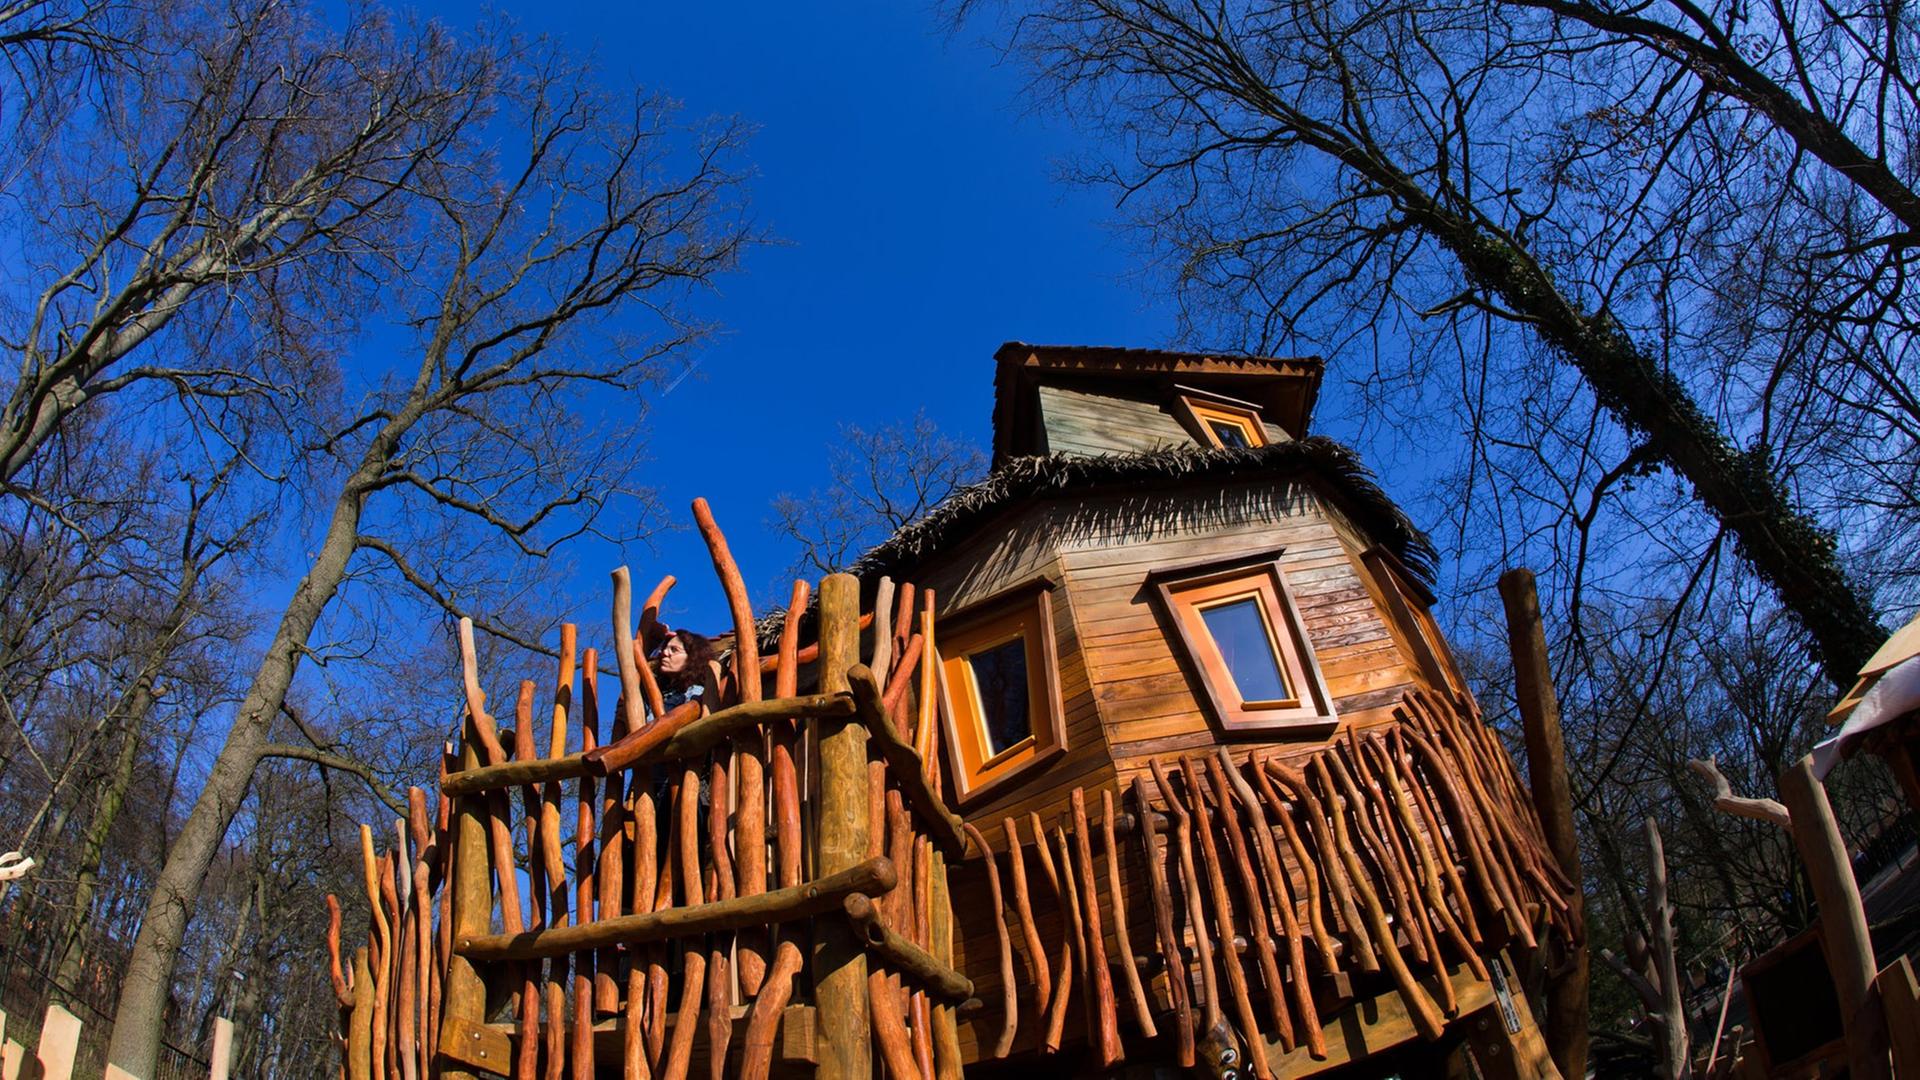 Ein Baumhaus im Stil einer historischen Forscherhütte des Südamerika-Reisenden Alexander von Humboldt (1769-1859) ist am 12.03.2014 im Zoo von Schwerin (Mecklenburg-Vorpommern) zu sehen.